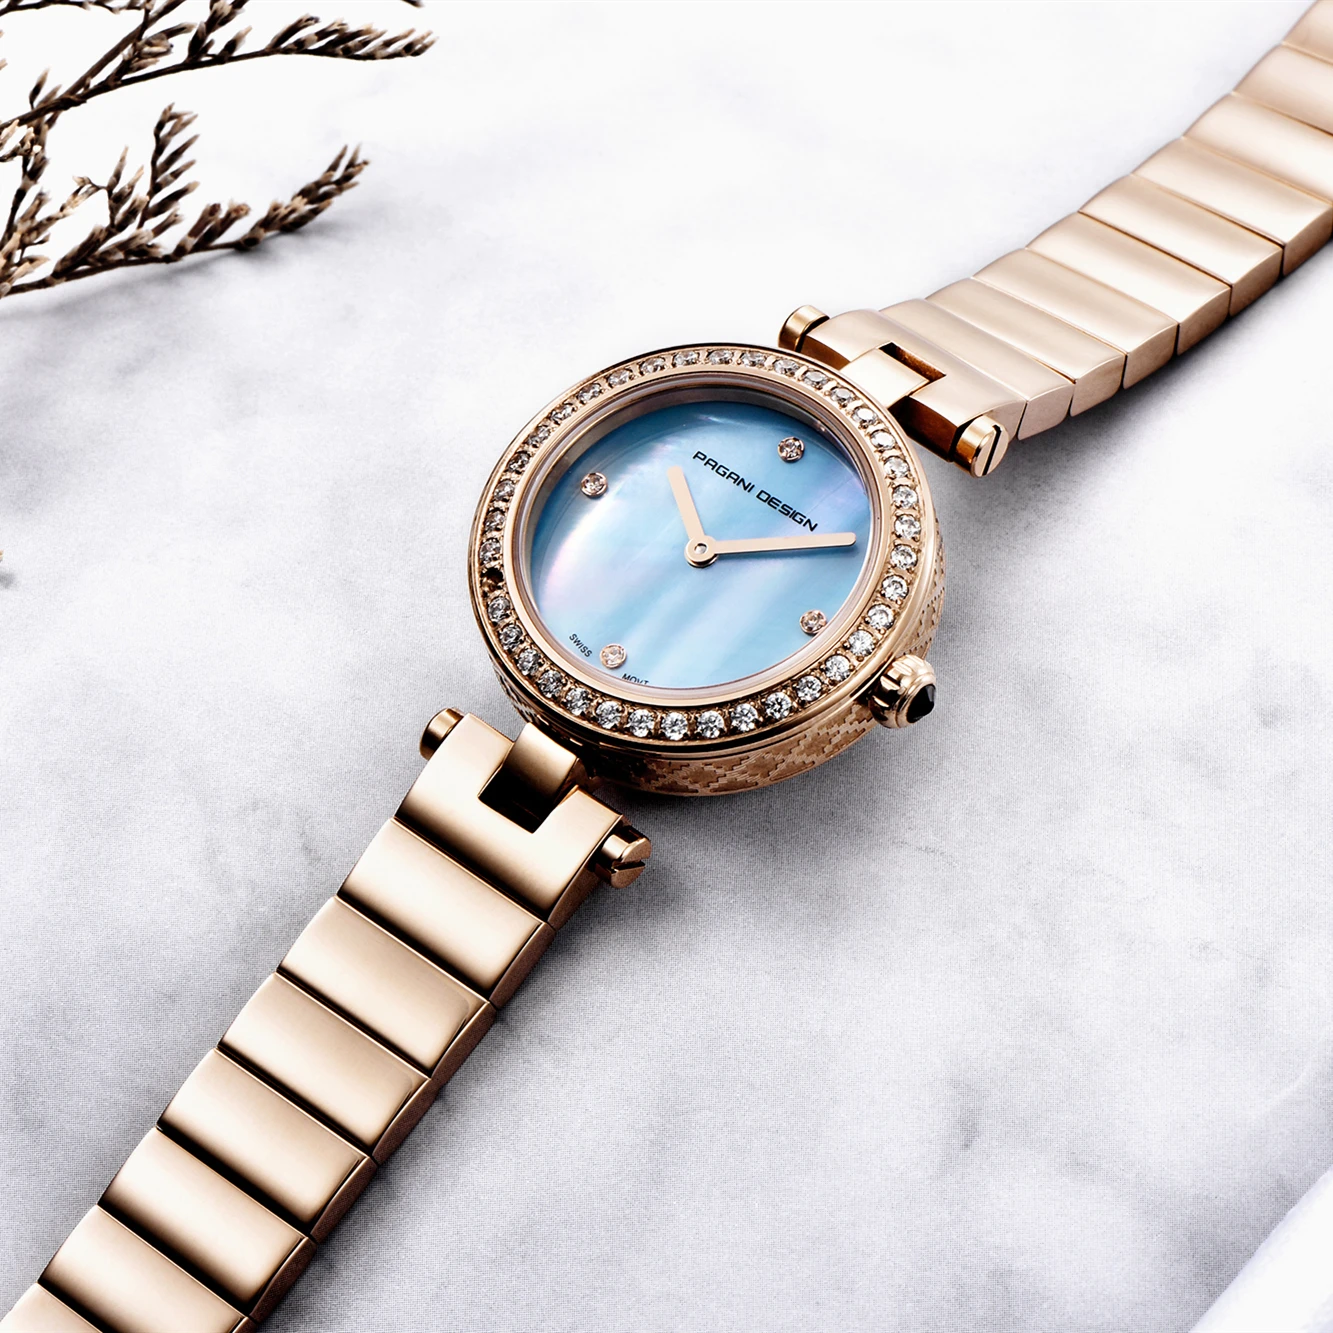 PAGANI Дизайн модные водонепроницаемые женские часы люксовый бренд женские бриллиантовые женские часы кварцевые из нержавеющей стали Reloj Mujer+ коробка